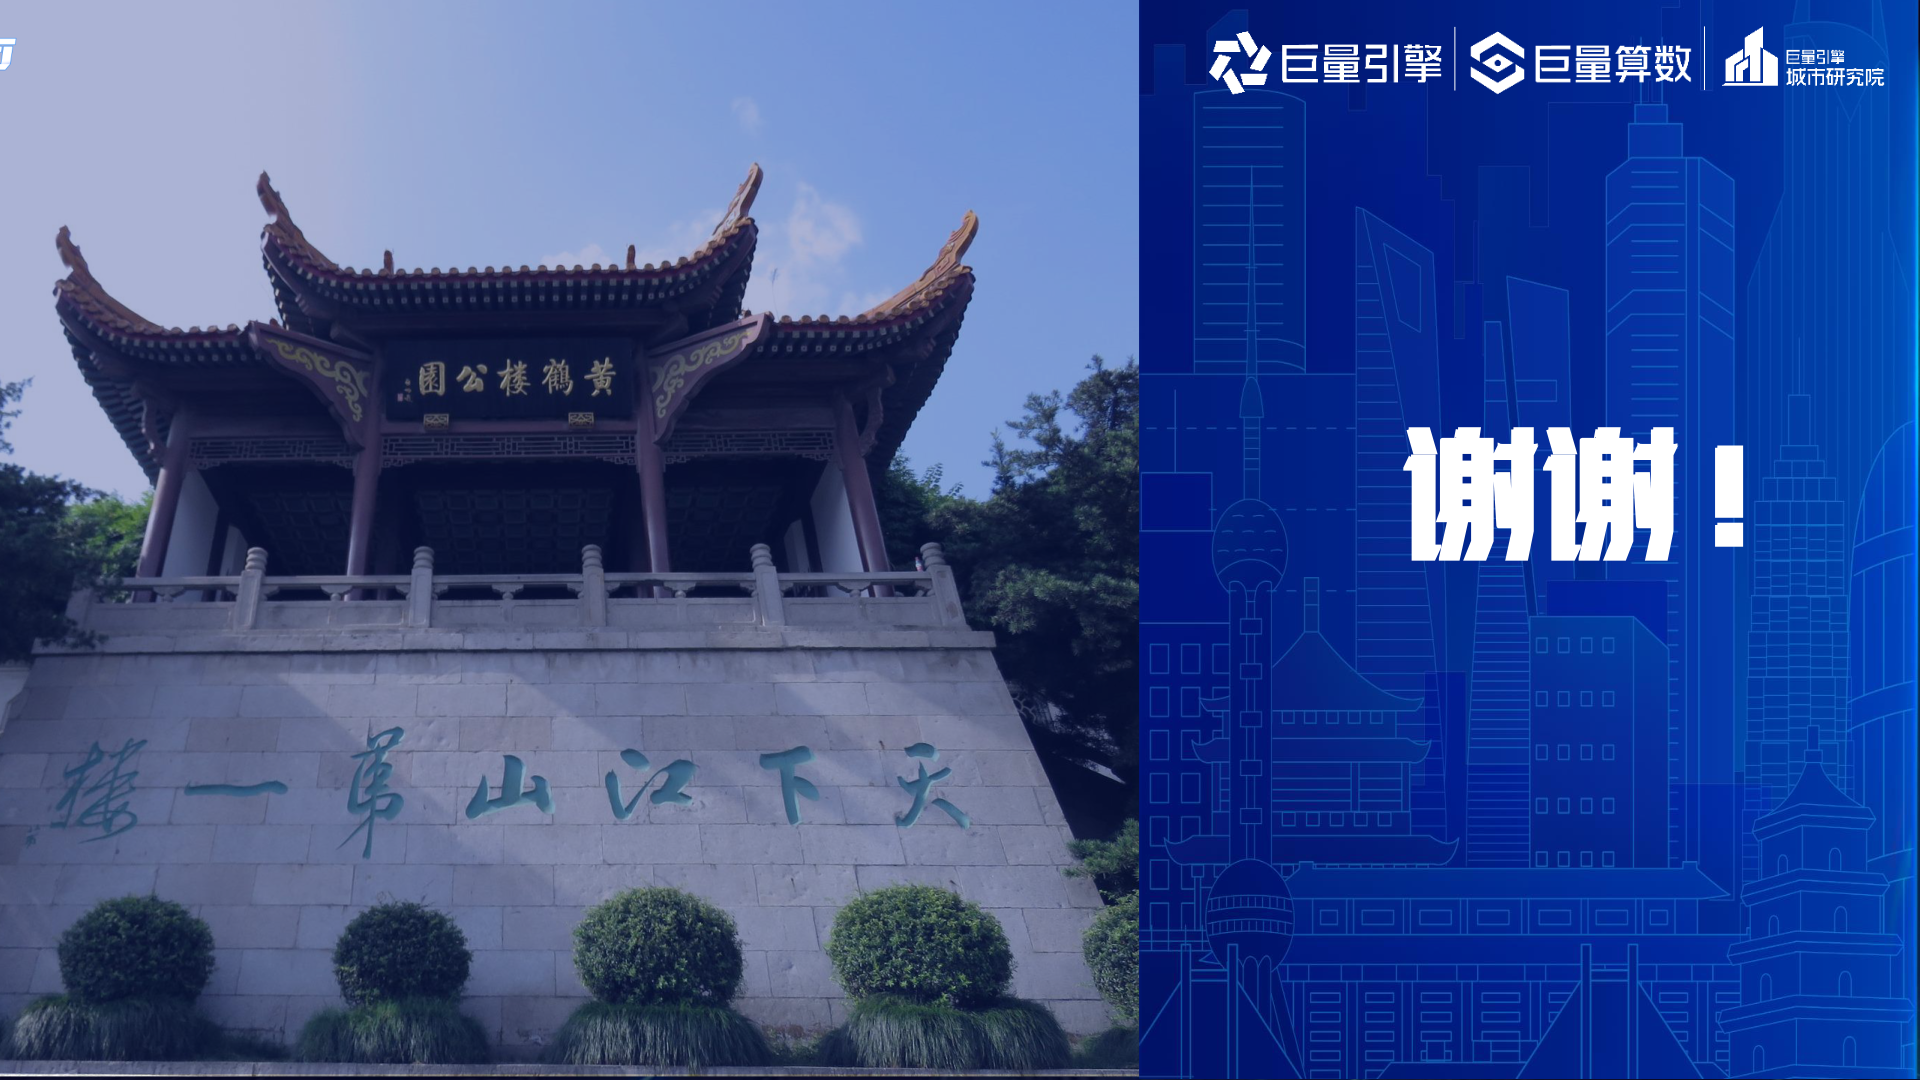 小城字记-CND设计网,中国设计网络首选品牌